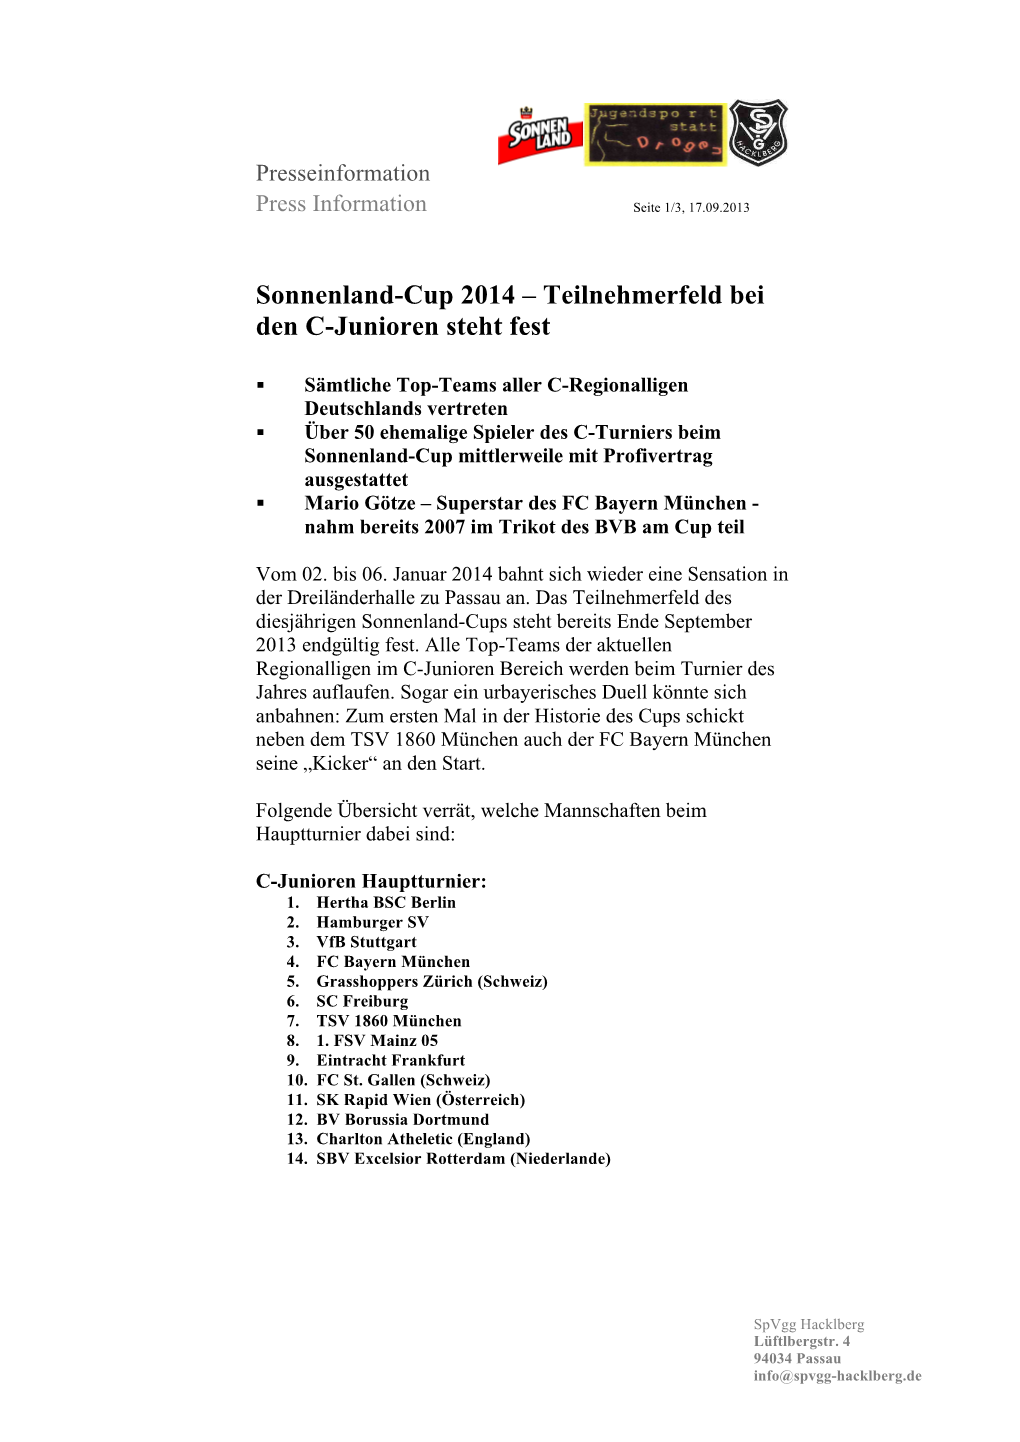 Sonnenland-Cup 2014 – Teilnehmerfeld Bei Den C-Junioren Steht Fest